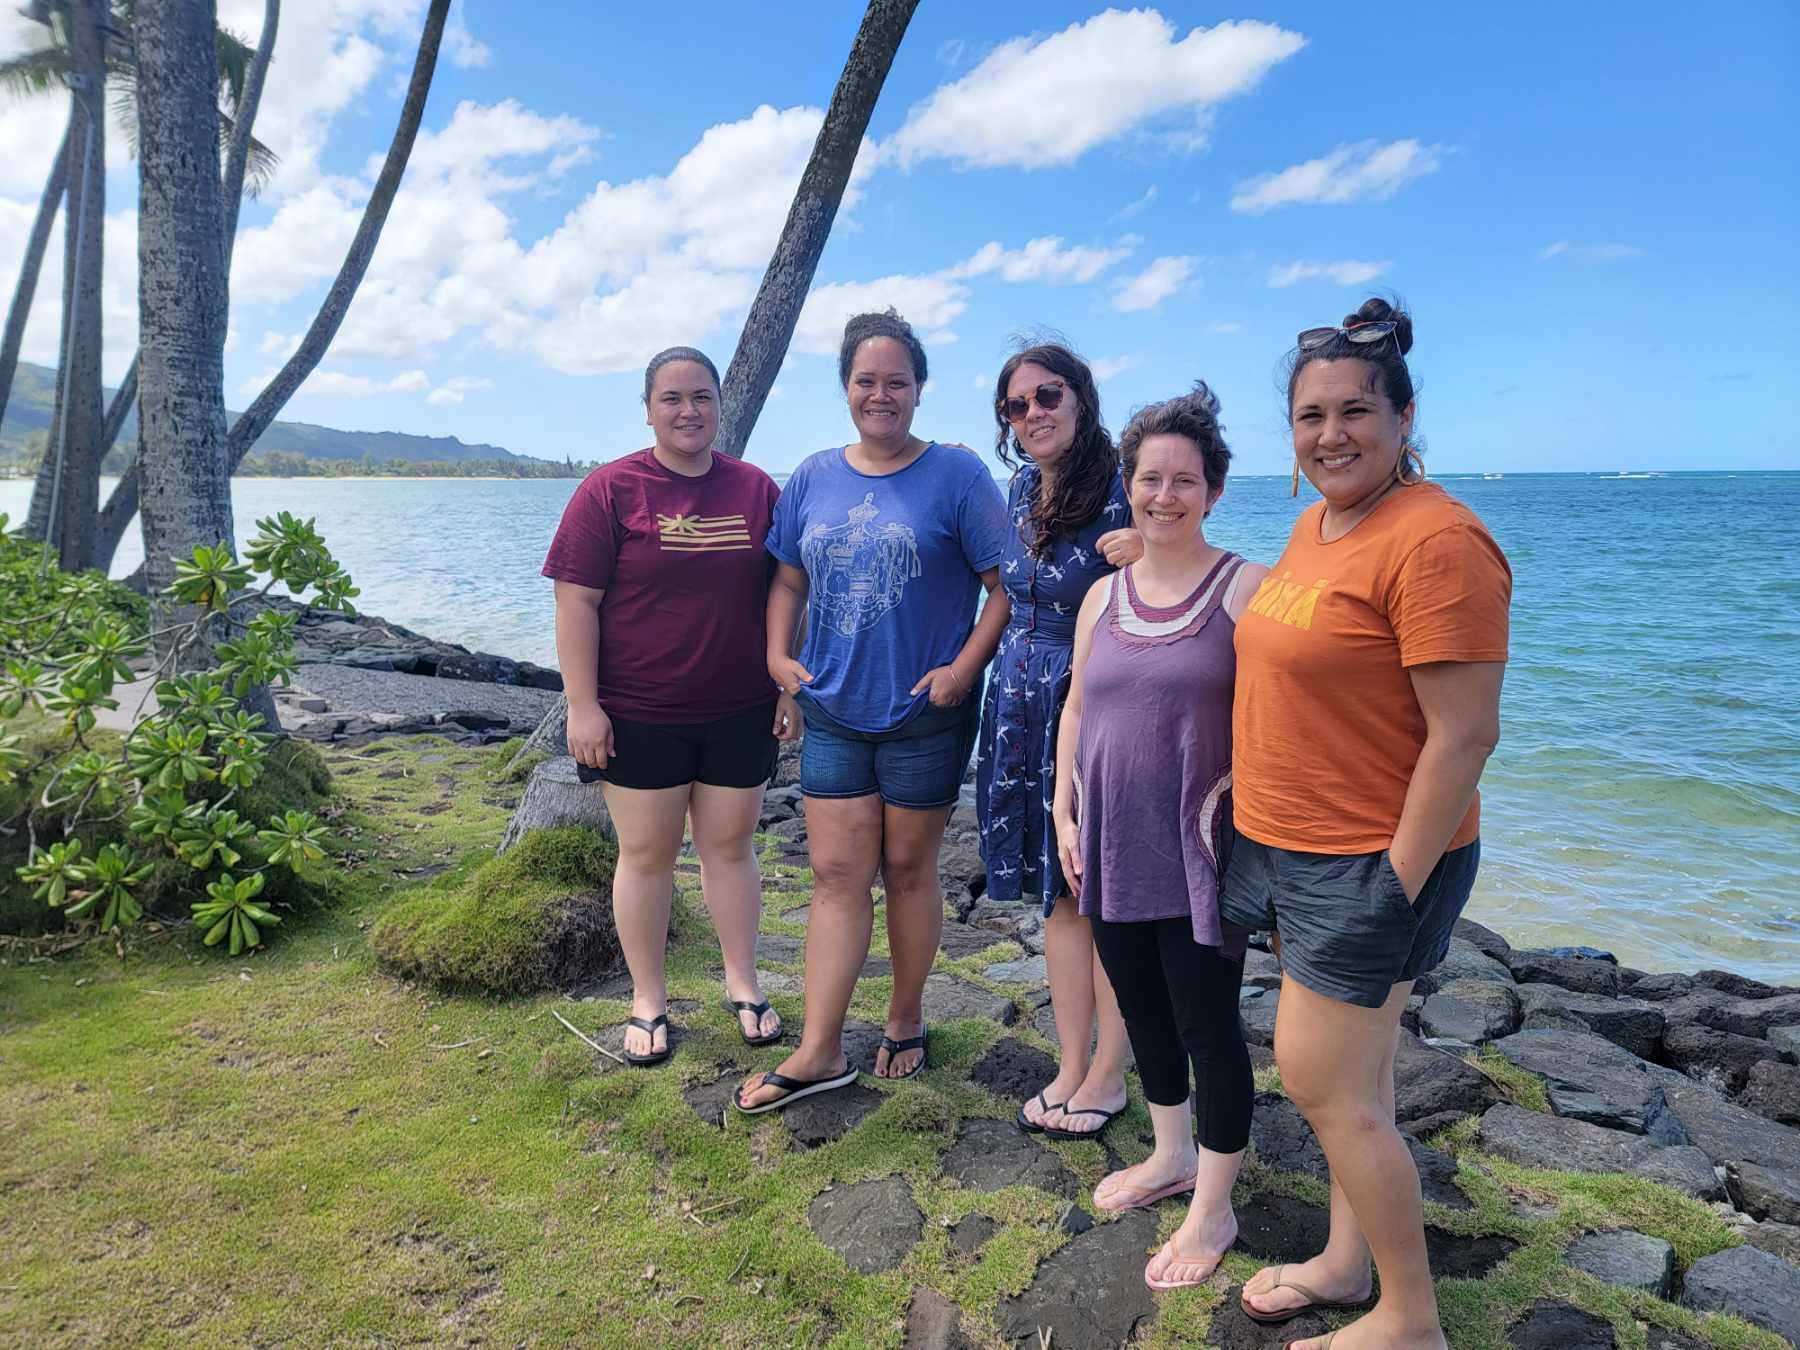 Project team members standing next to Punaluʻu ocean